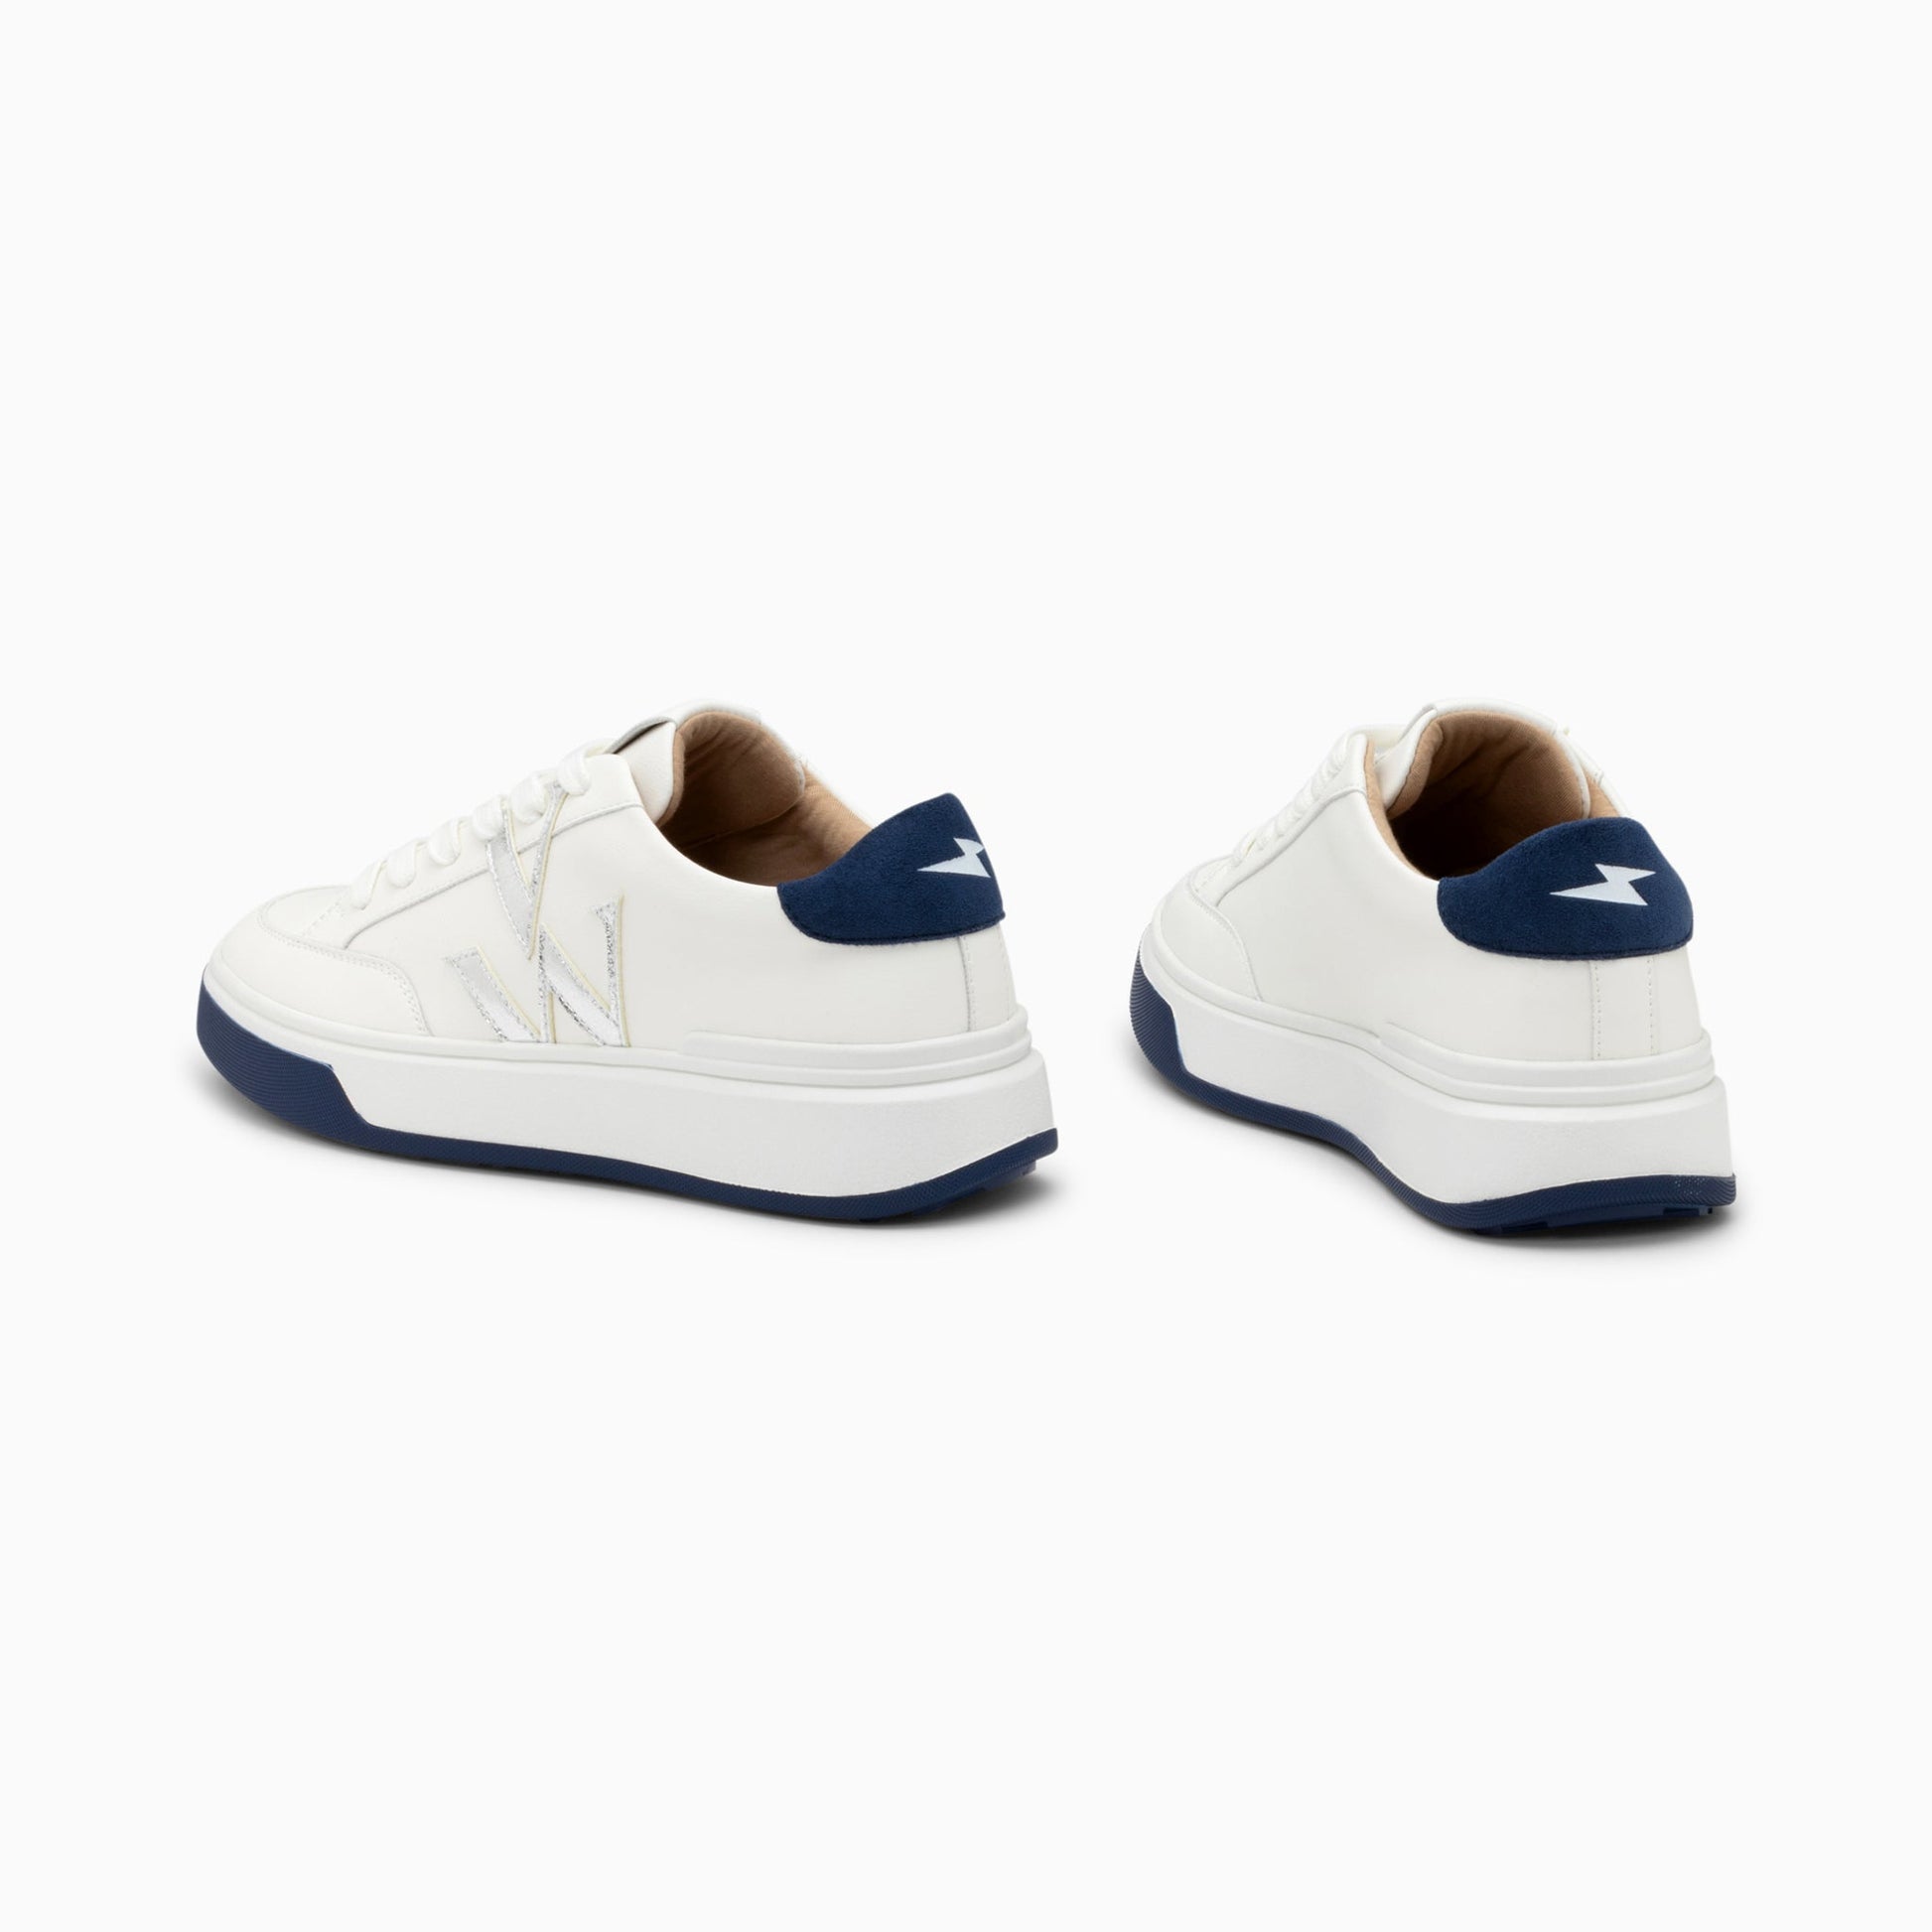 Sneakers blanches femme avec monogramme Vanessa Wu argent avec semelle blanche et bleu marine